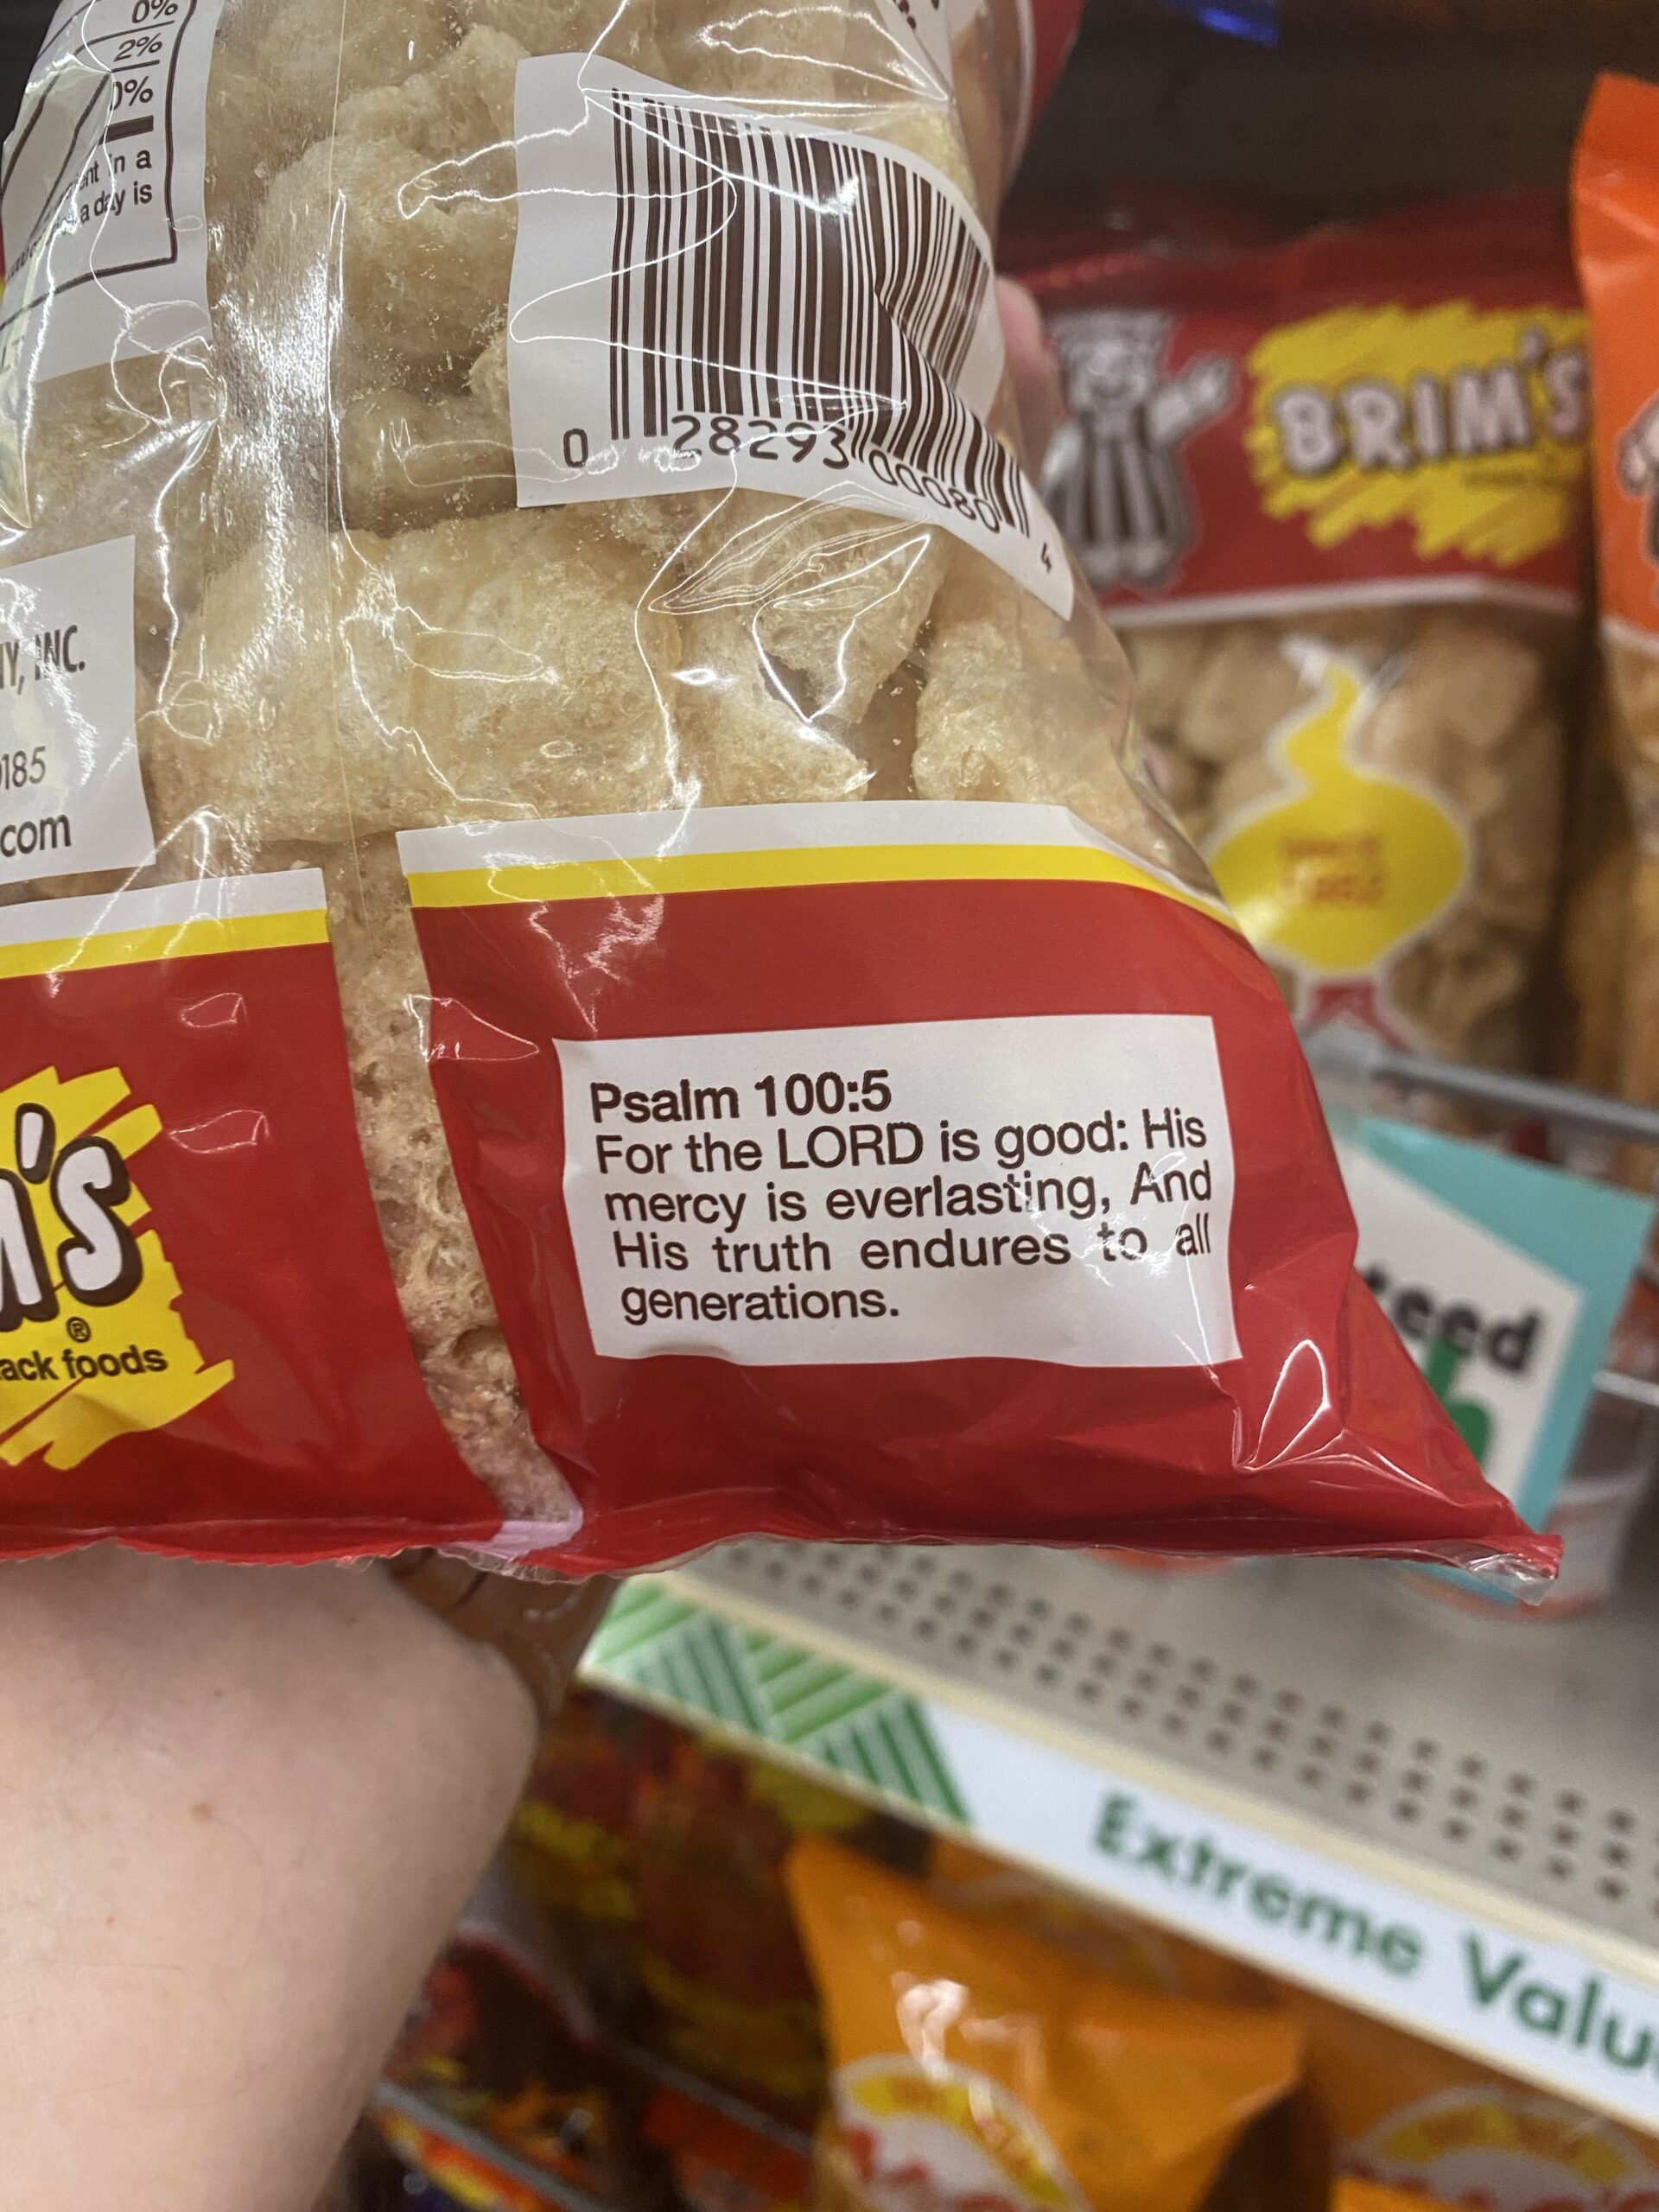 Psalm 100:5 - Brim’s Snack Foods®